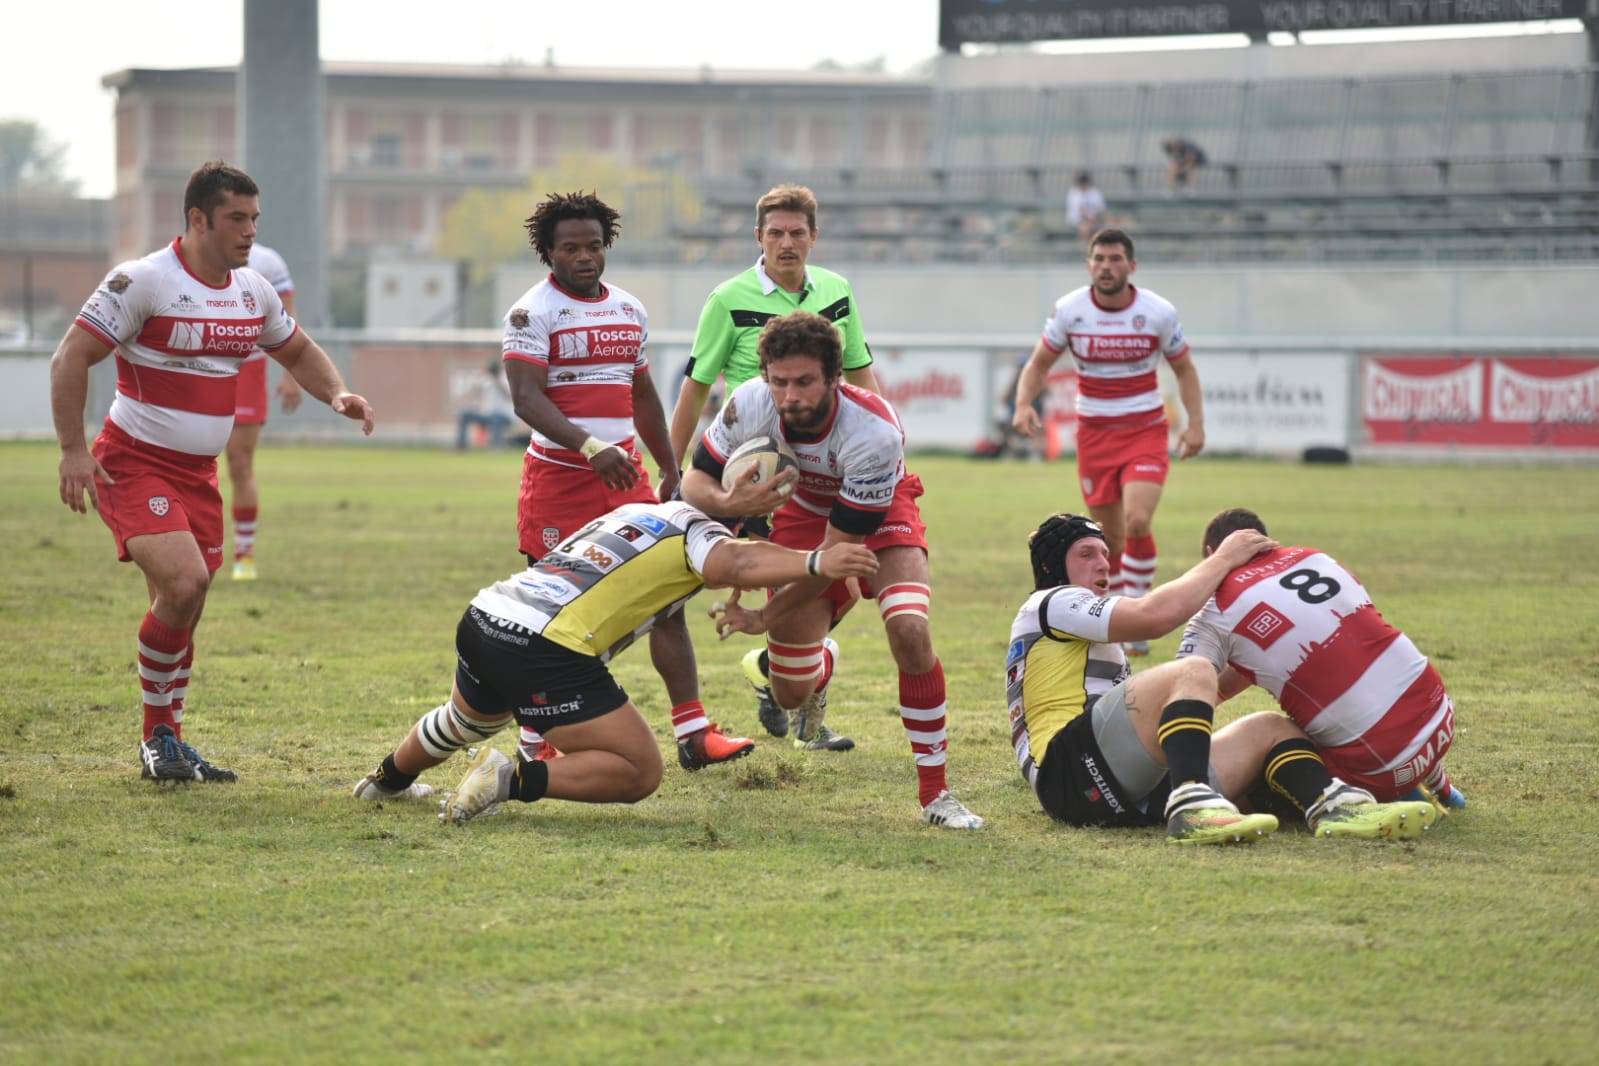 Boccardo - Foto Ufficio Stampa Rugby Calvisano